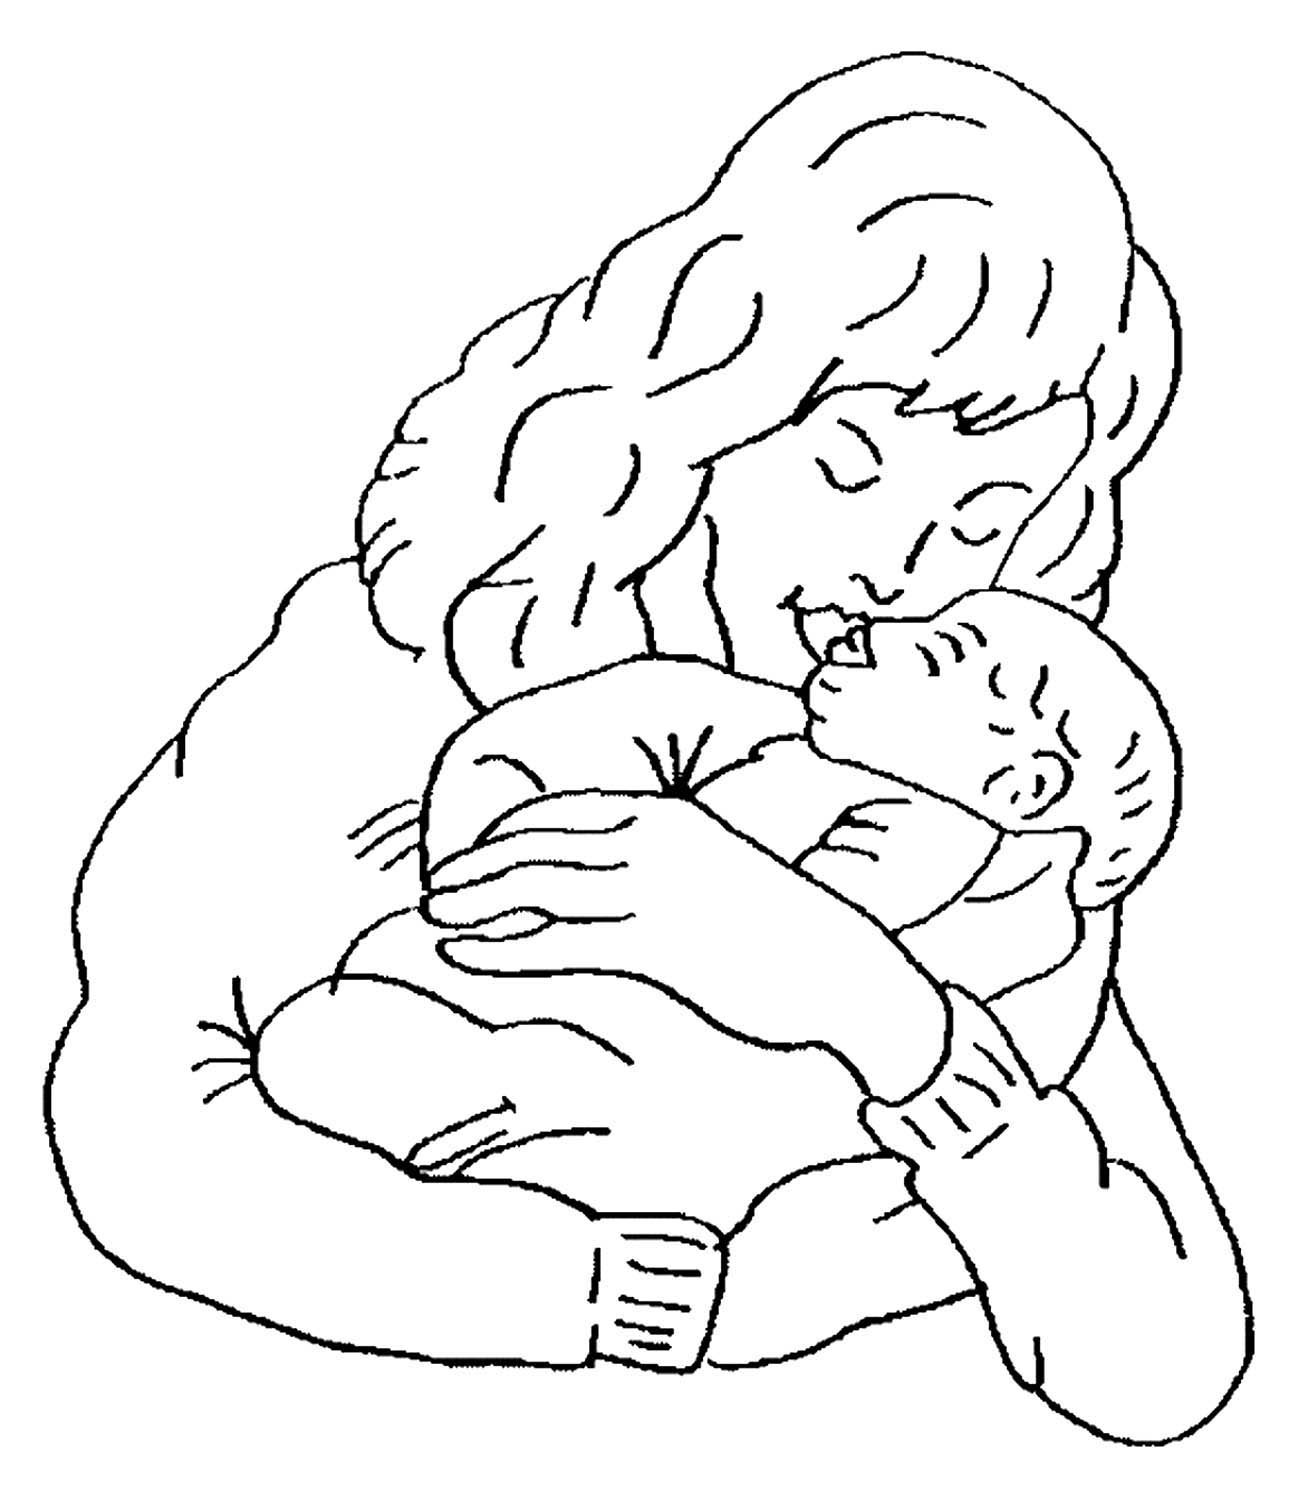 Раскраска мать ребенка. Рисунок ко Дню матери. Раскраска мама с младенцем. Мама с ребенком раскраска для детей. Рисунок на день матери легкий.